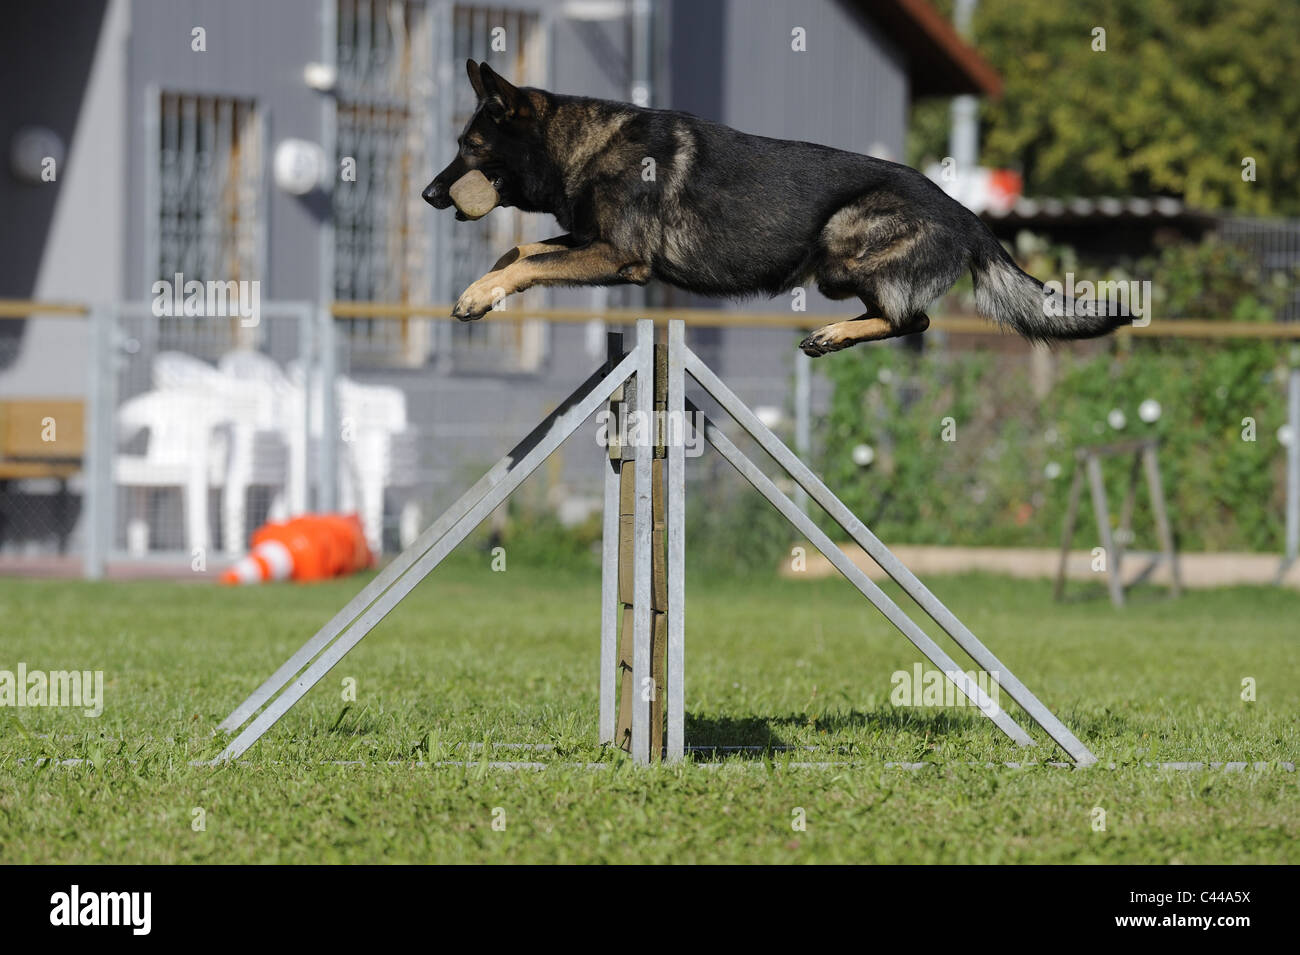 Berger allemand, l'alsacien (Canis lupus familiaris). Homme sautant par-dessus un obstacle majeur au cours de sa formation de chien de garde. Banque D'Images